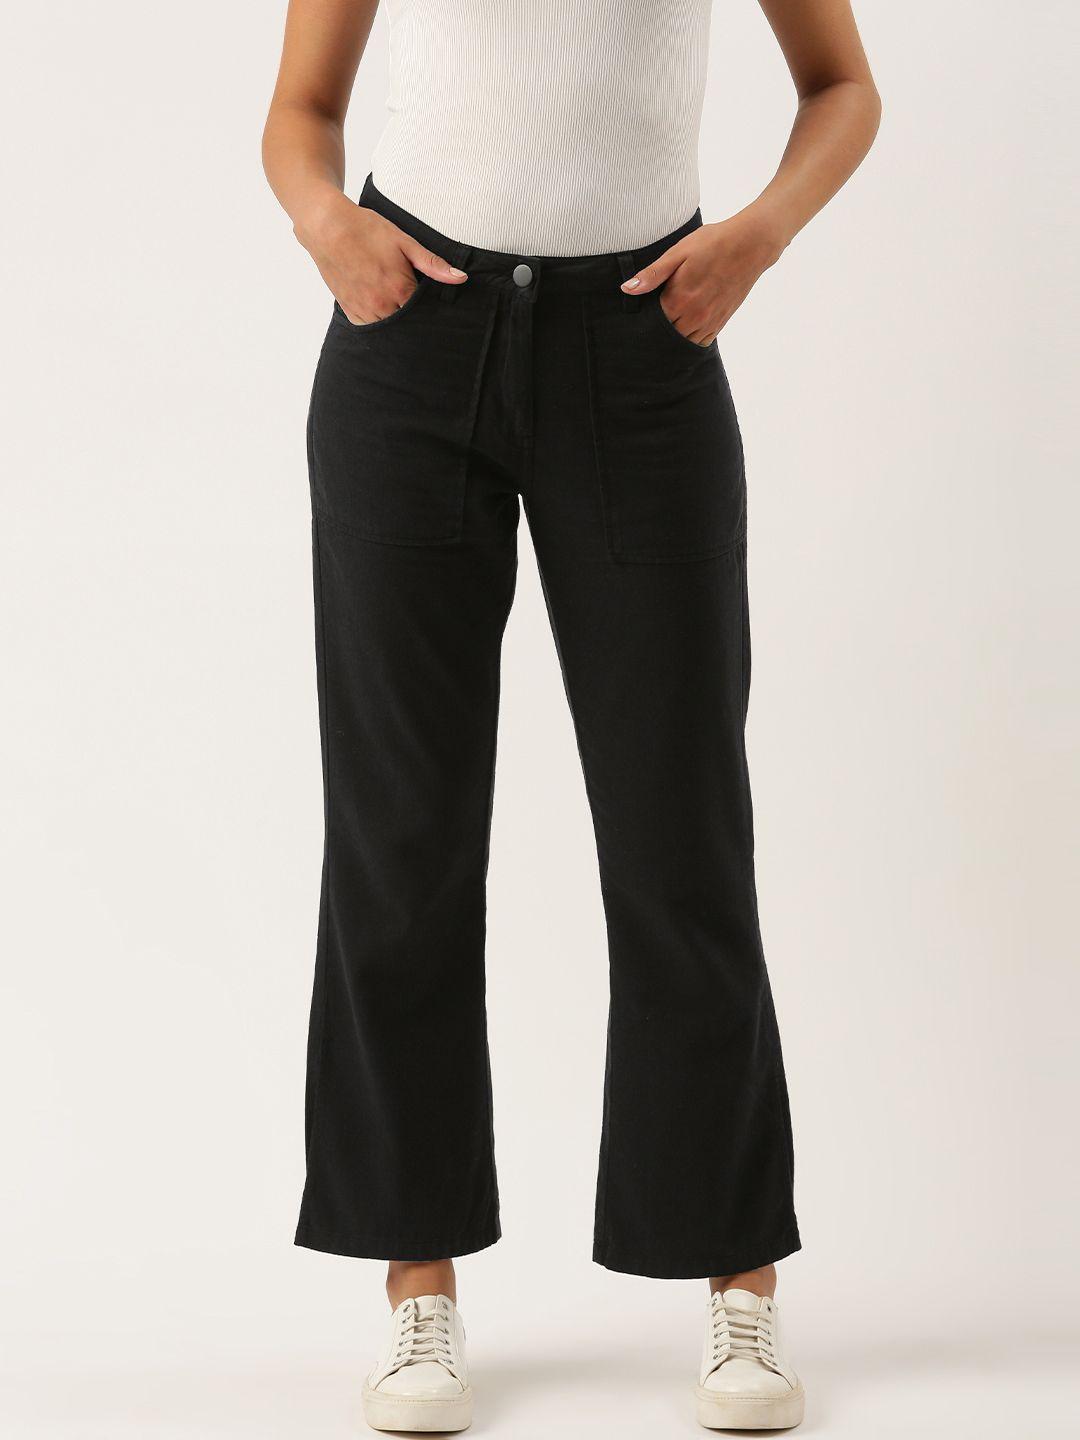 ivoc women black solid pure cotton mid-rise slim fit jeans